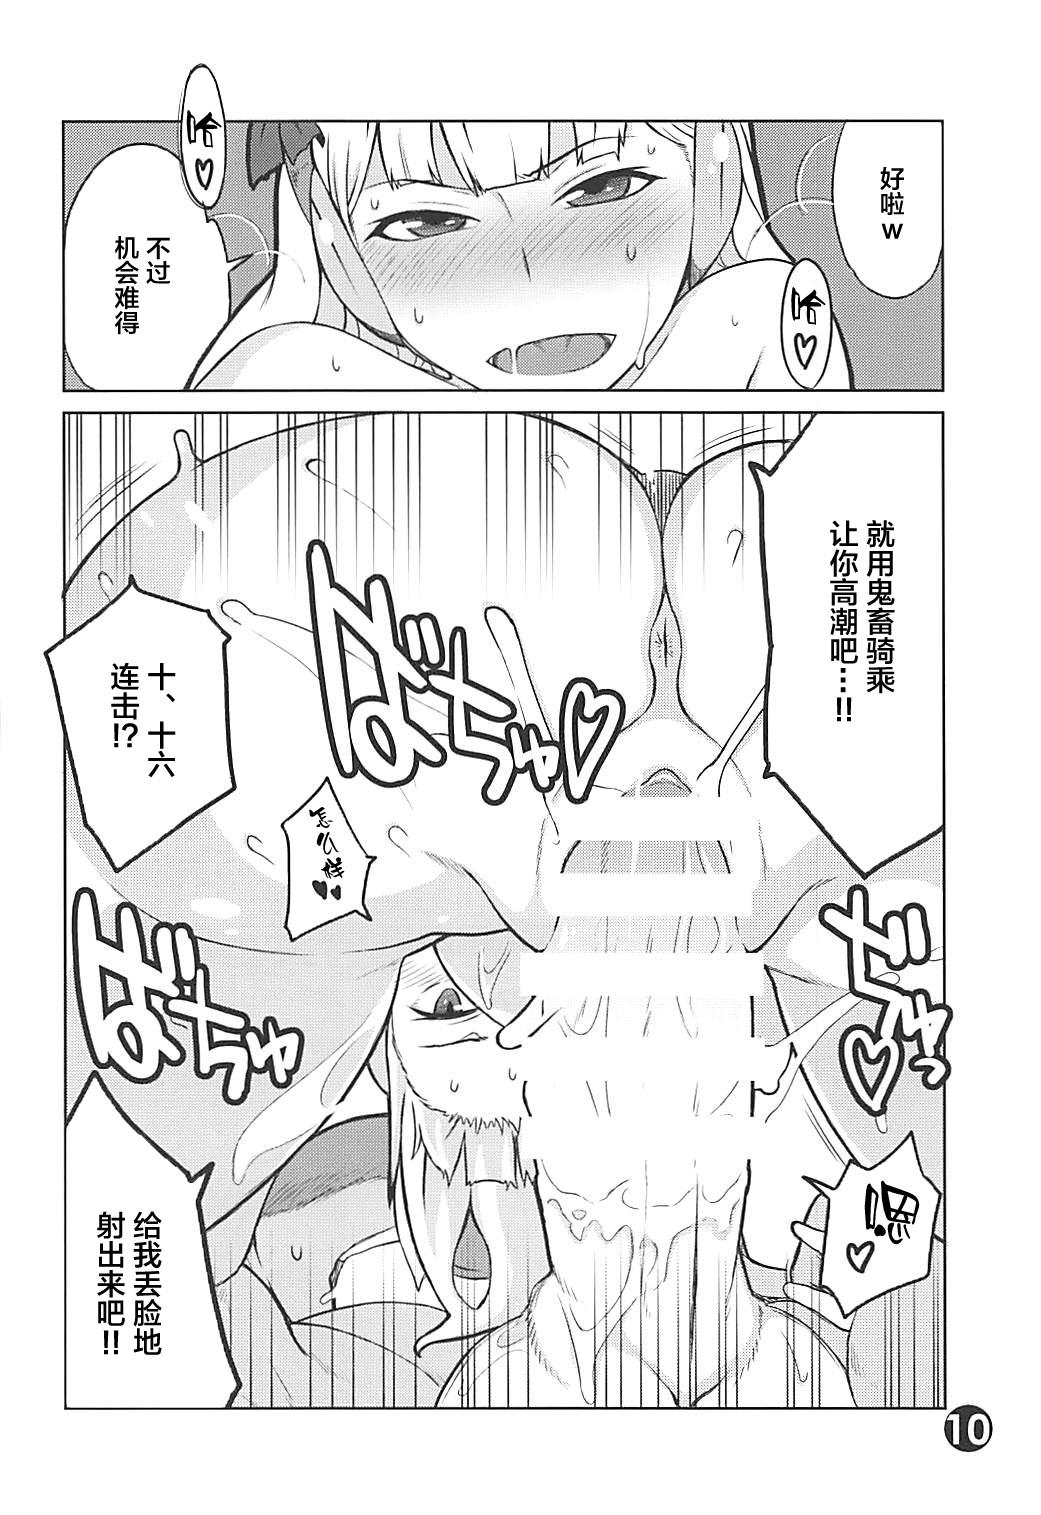 Groping Gorushi-chan Fan Kansha Day!! - Uma musume pretty derby Yanks Featured - Page 9